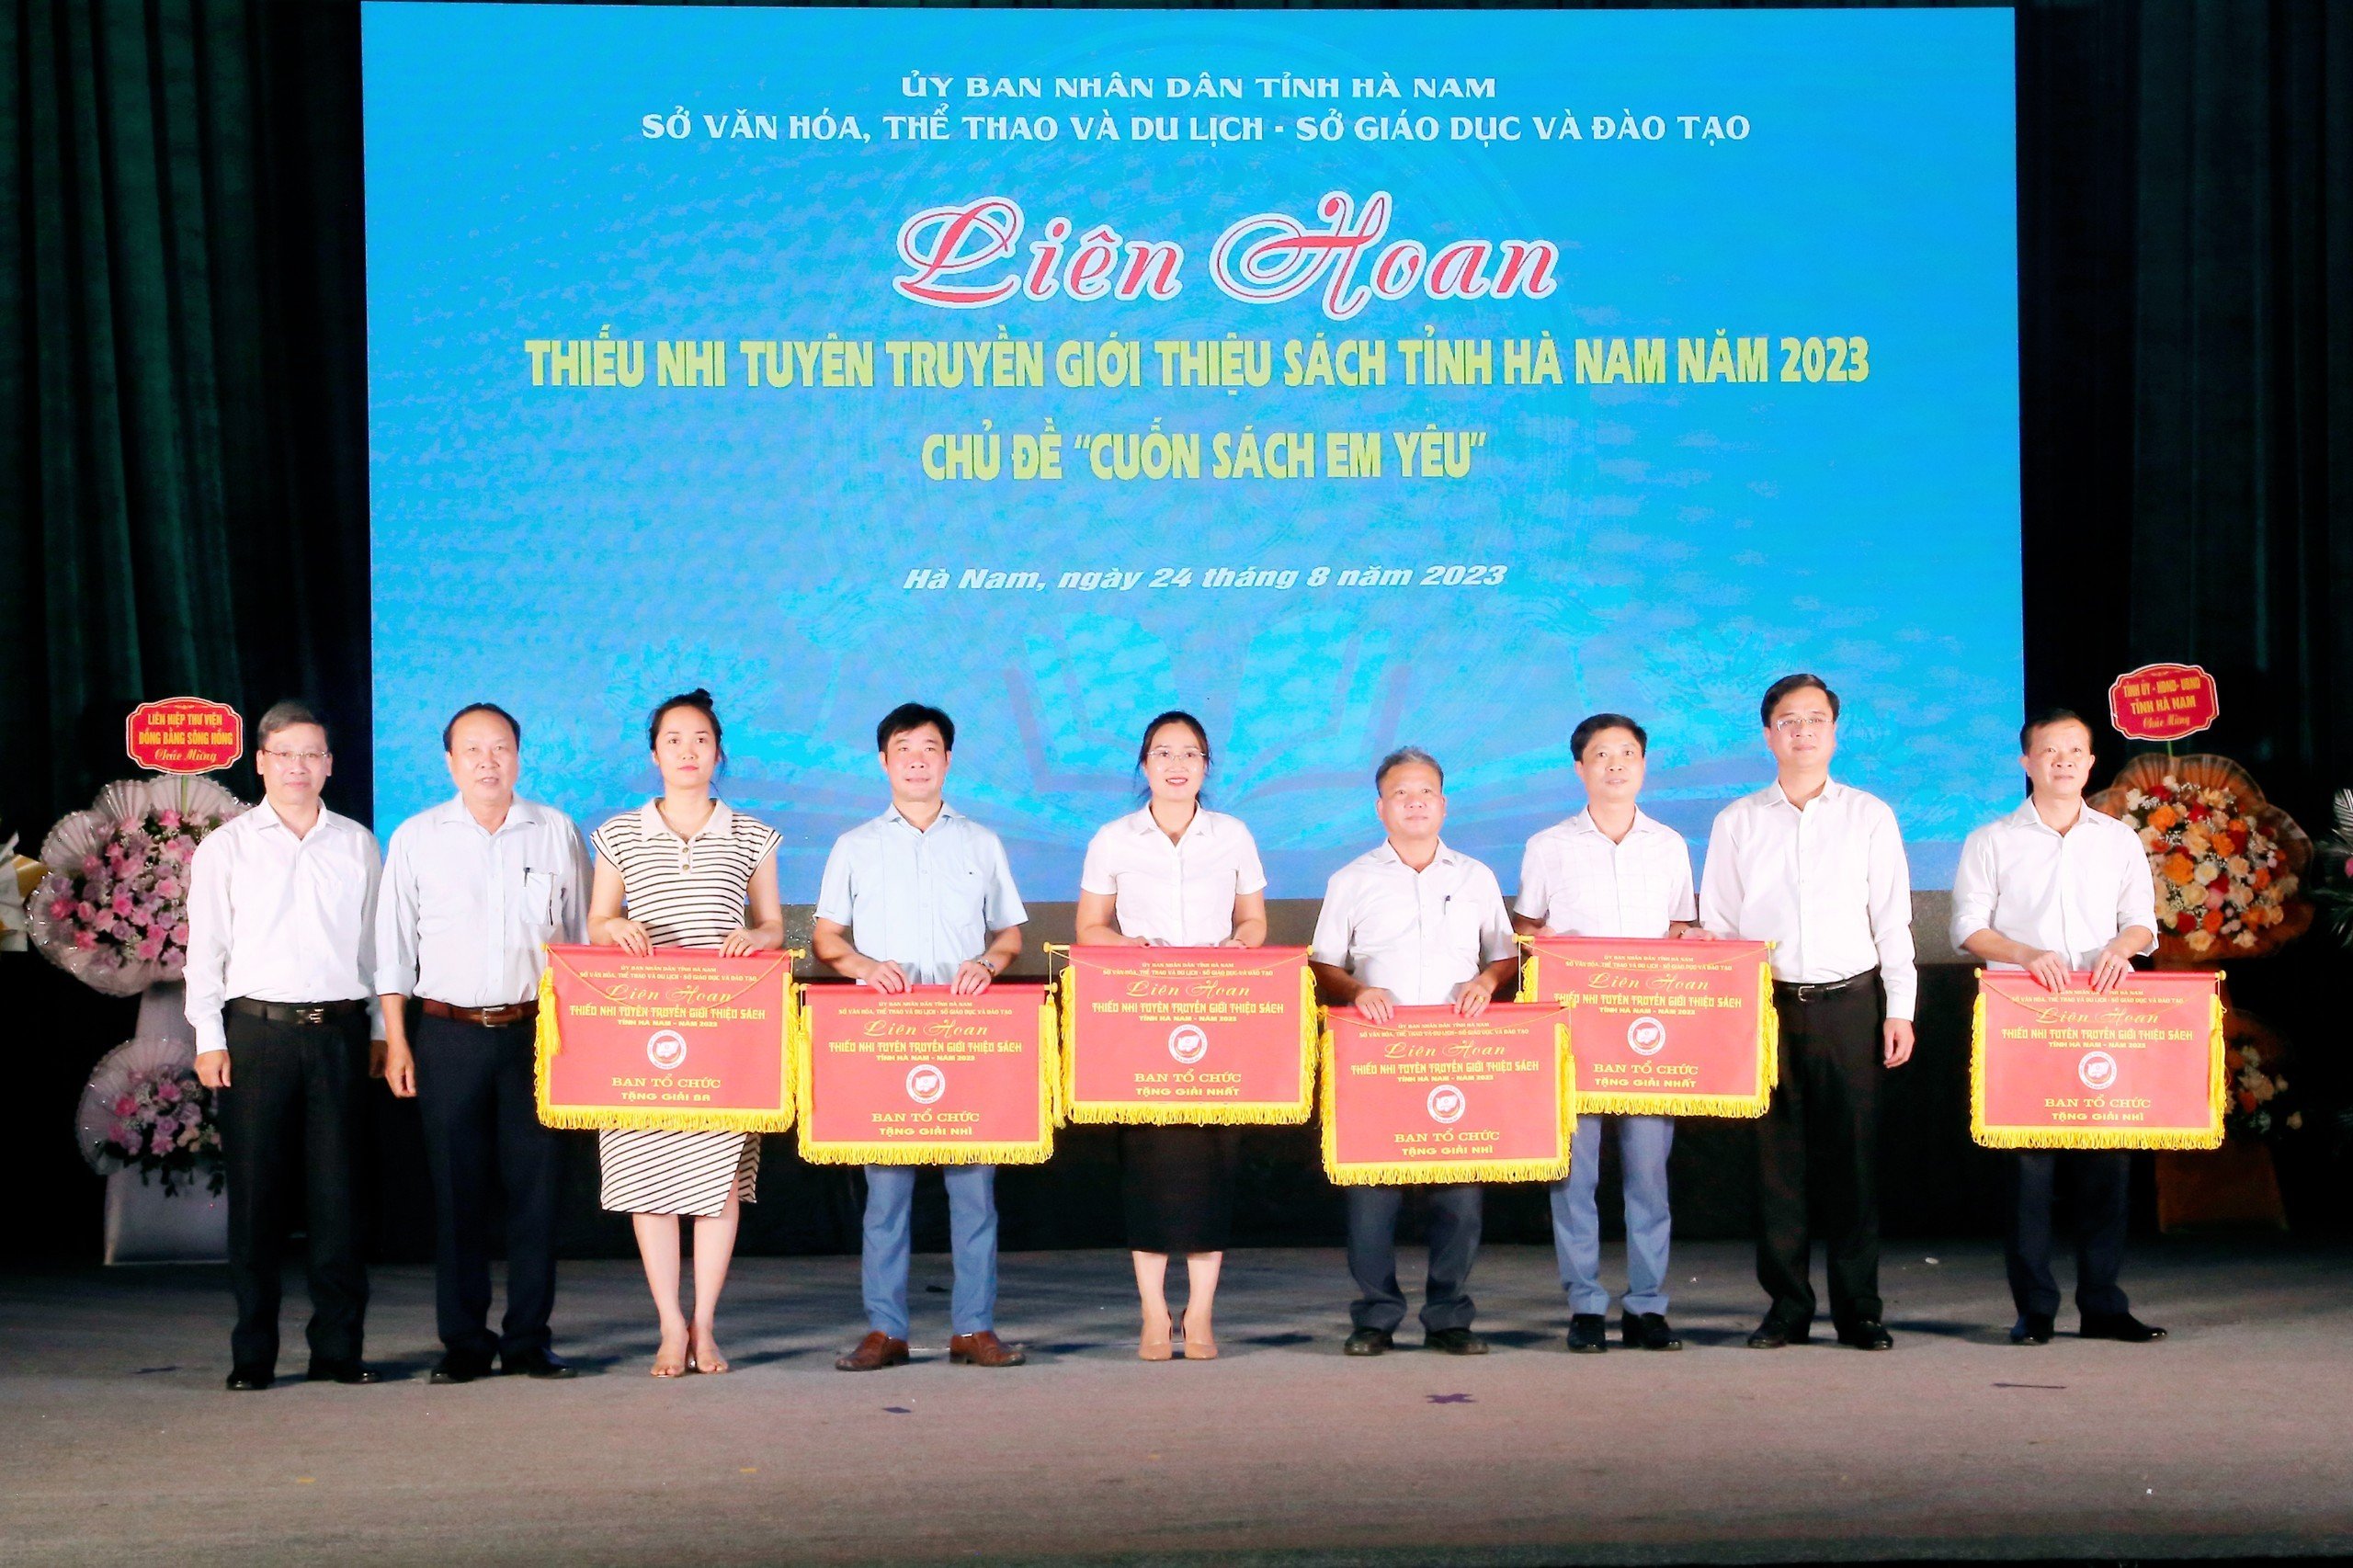 Liên hoan thiếu nhi tuyên truyền, giới thiệu sách tỉnh Hà Nam năm 2023